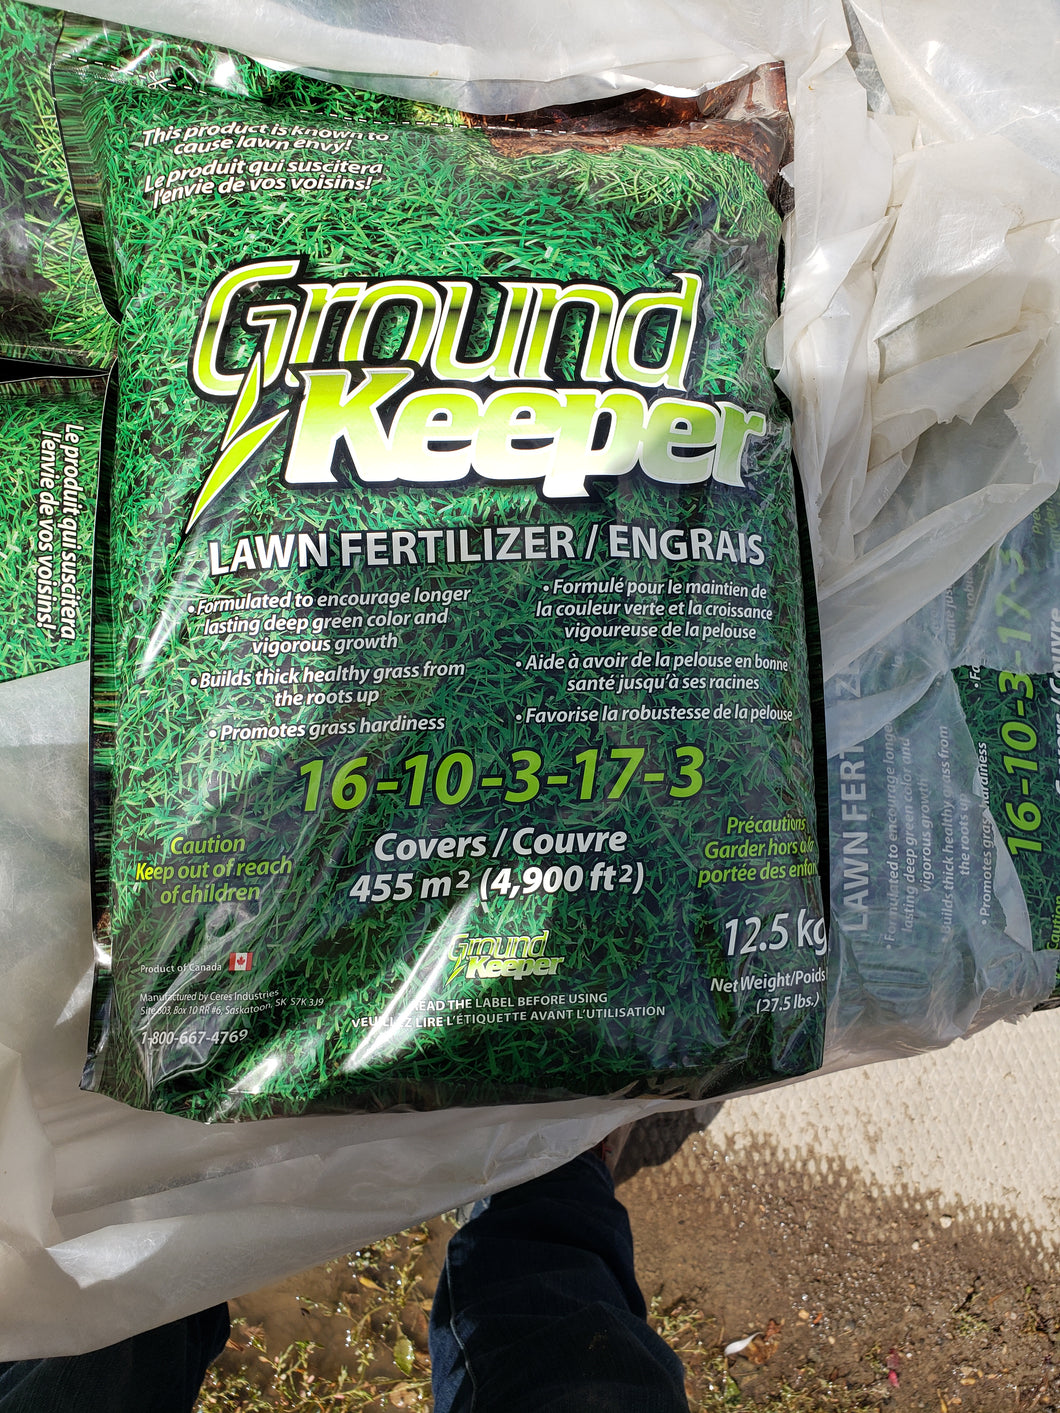 Ground Keeper Lawn Fertilizer 16-10-3-17-3